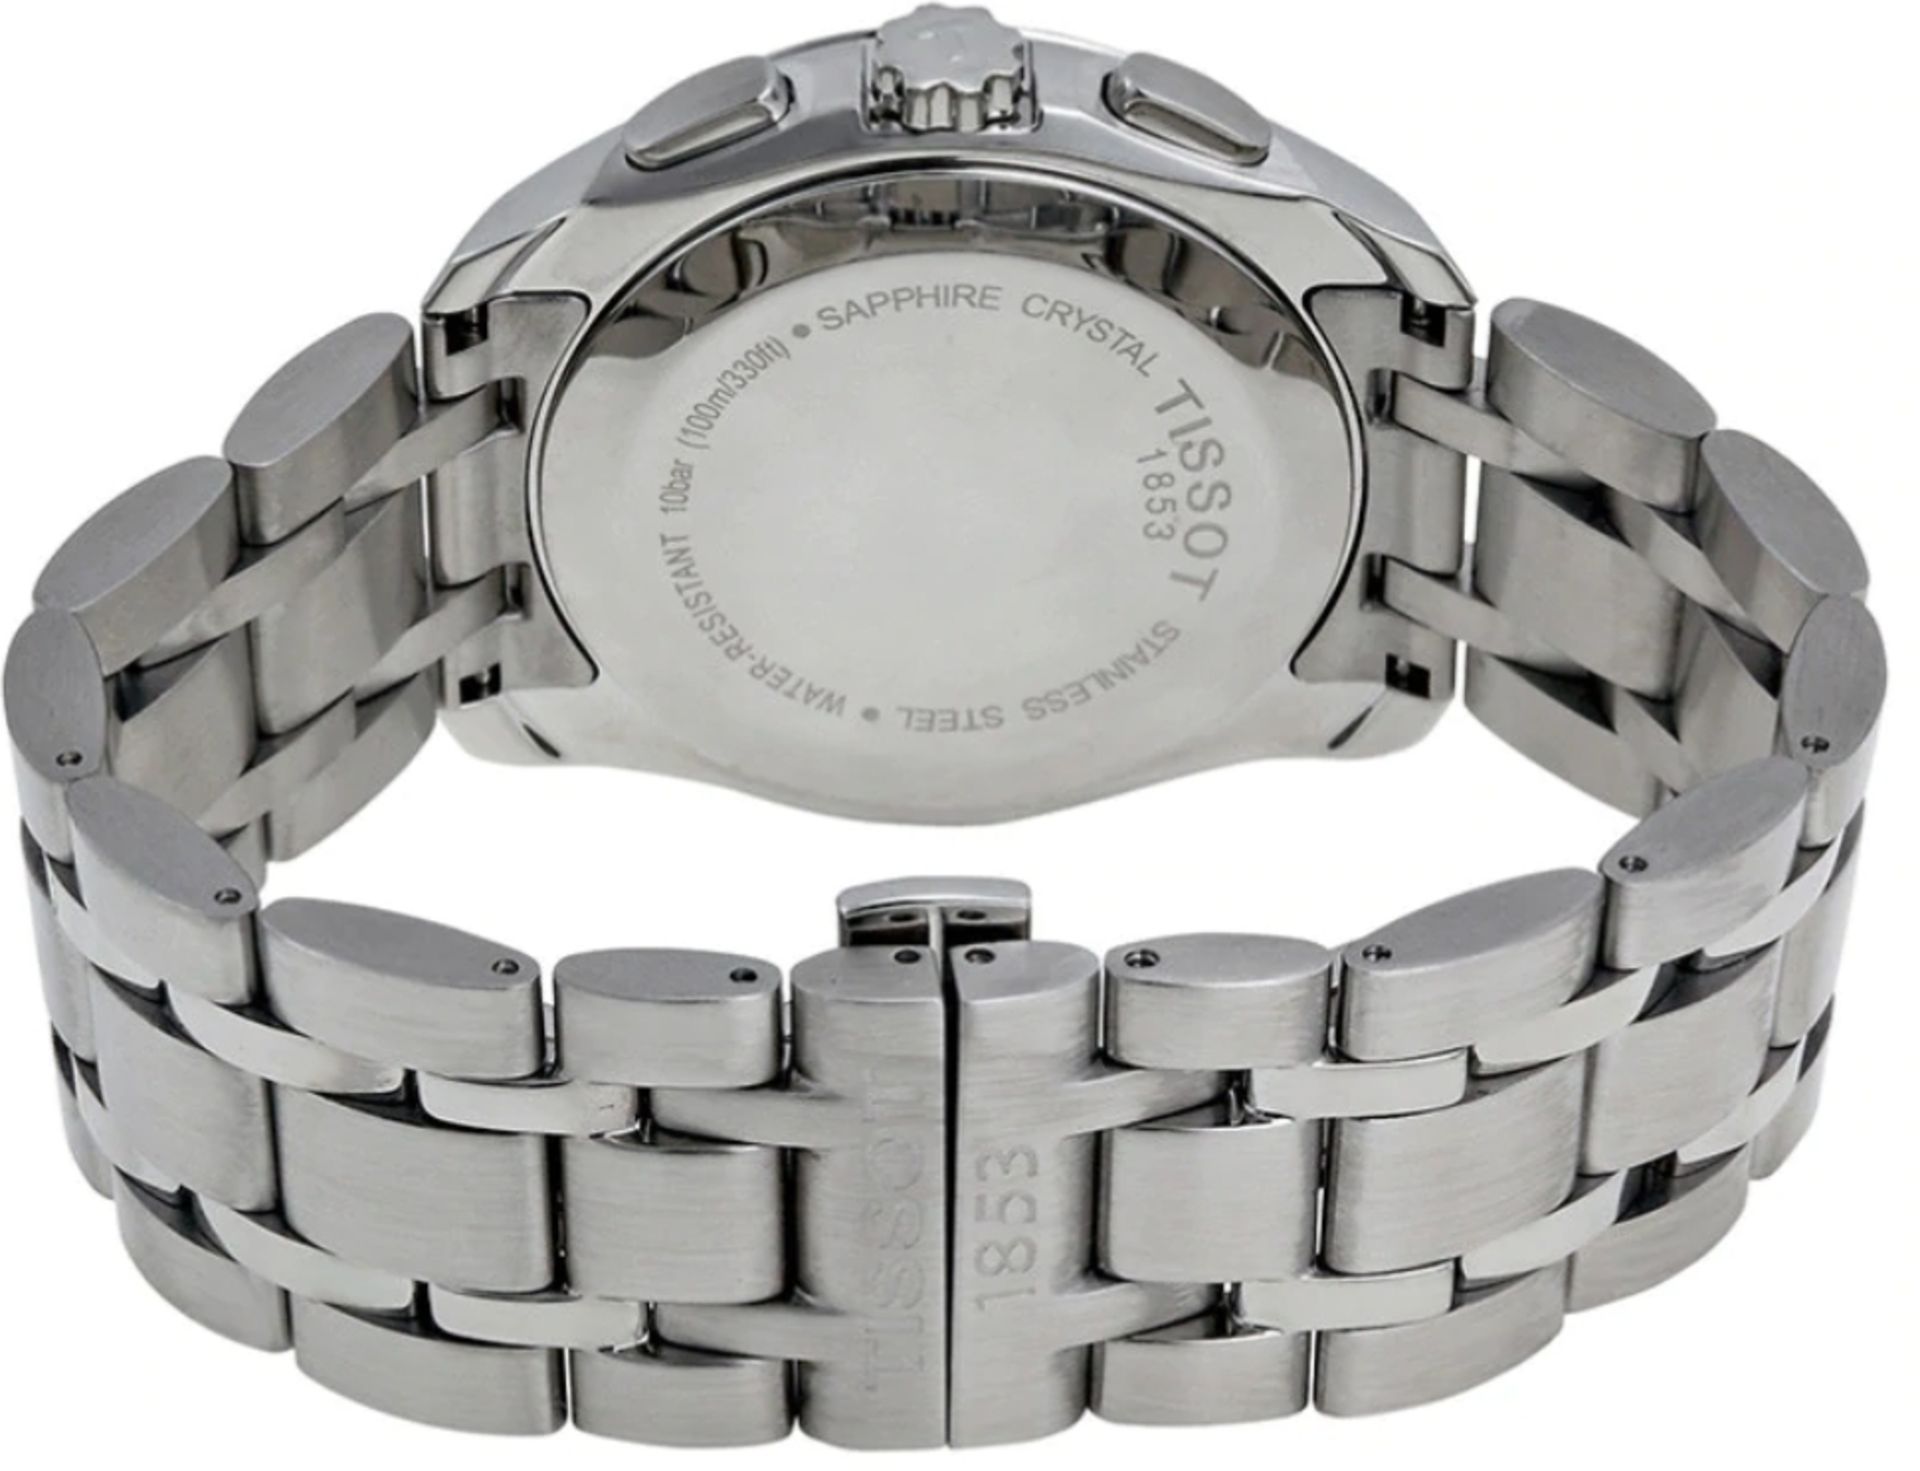 TISSOT T035.617.11.051.00 Men's Couturier Quartz Chronograph Watch - Image 8 of 10